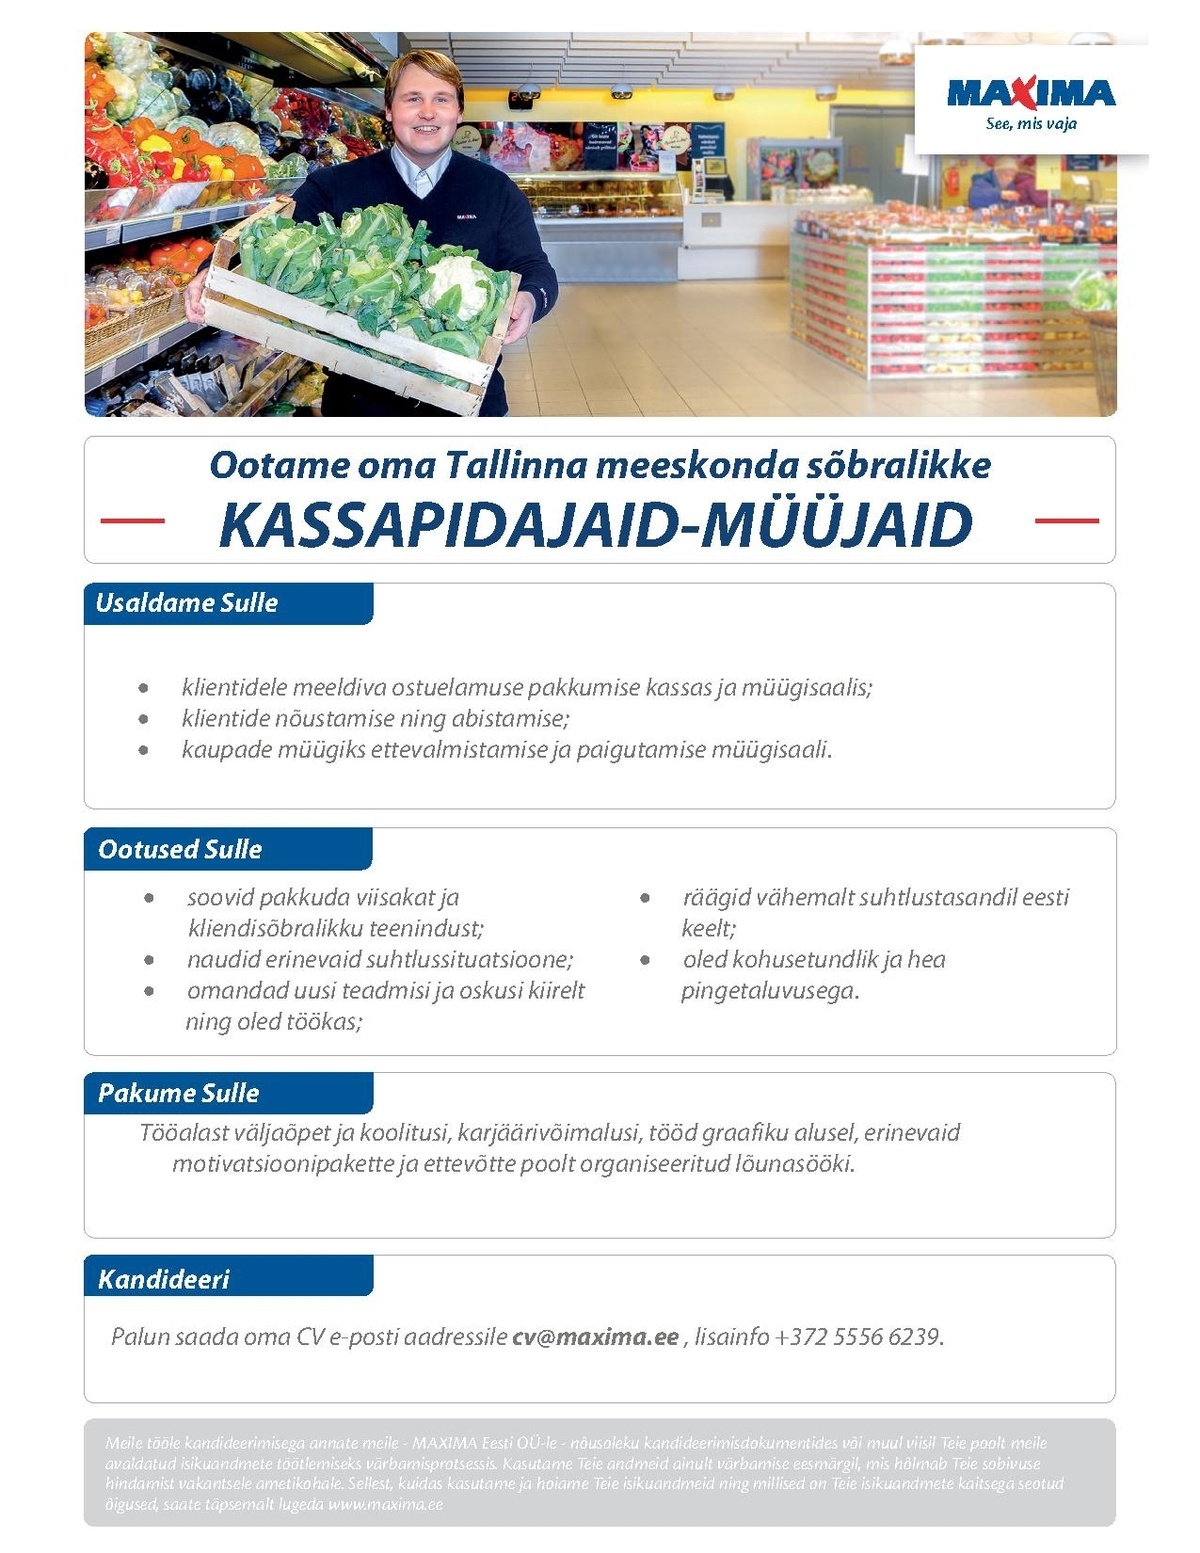 Maxima Eesti OÜ Kassapidaja-müüja Männiku Maximas (Valdeku 114)